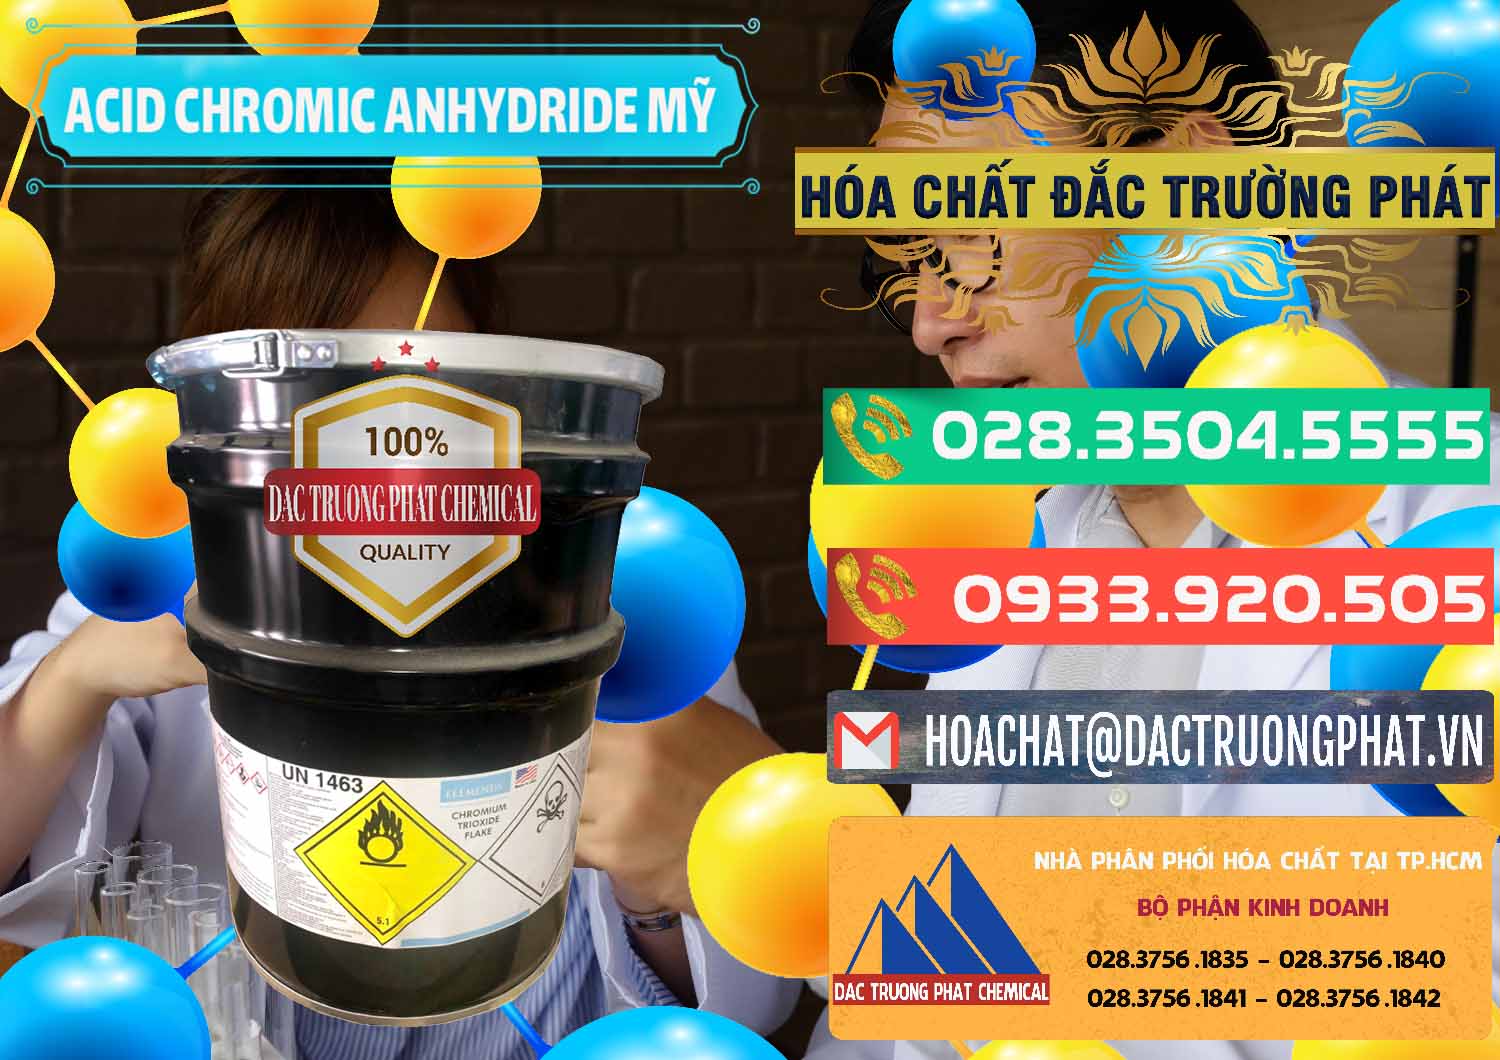 Công ty chuyên bán & cung ứng Acid Chromic Anhydride - Cromic CRO3 USA Mỹ - 0364 - Đơn vị chuyên cung cấp & kinh doanh hóa chất tại TP.HCM - congtyhoachat.com.vn